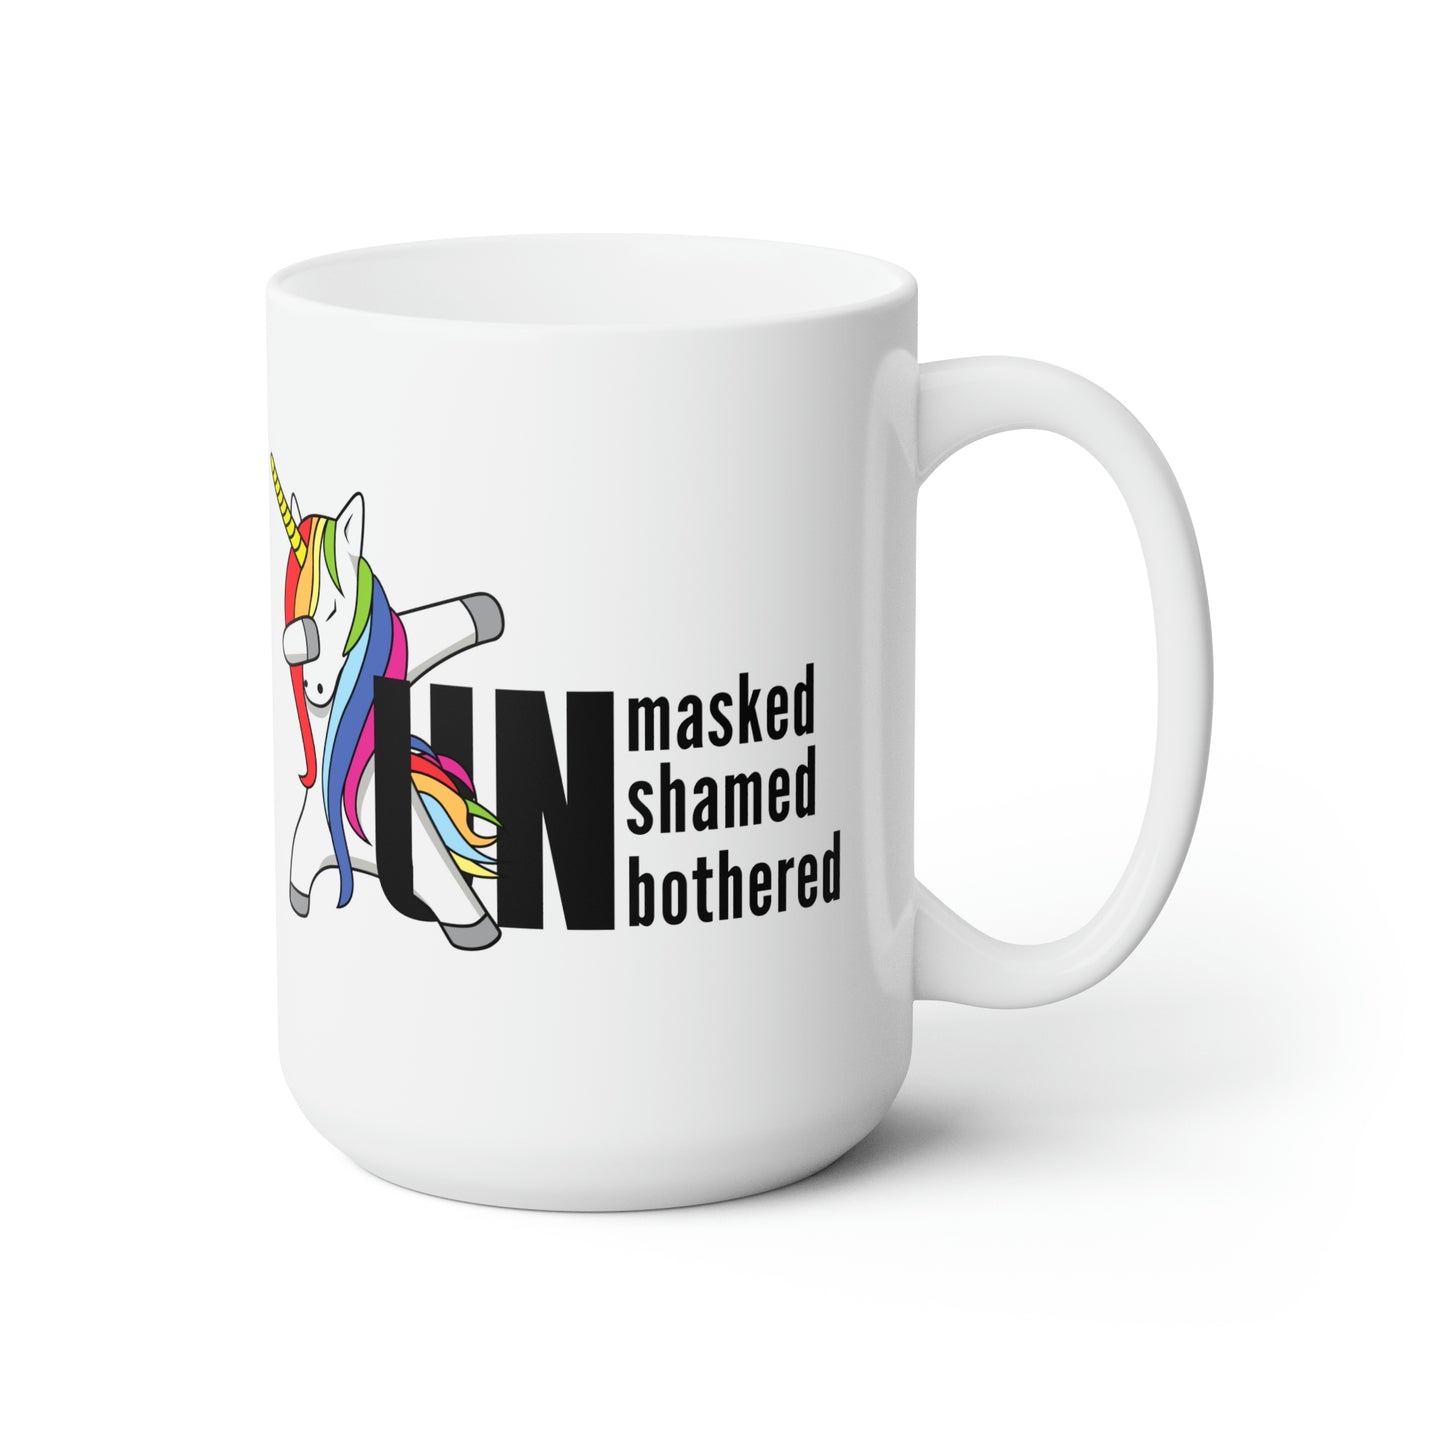 "Unmasked Unshamed Unbothered" Unicorn Mug 15oz